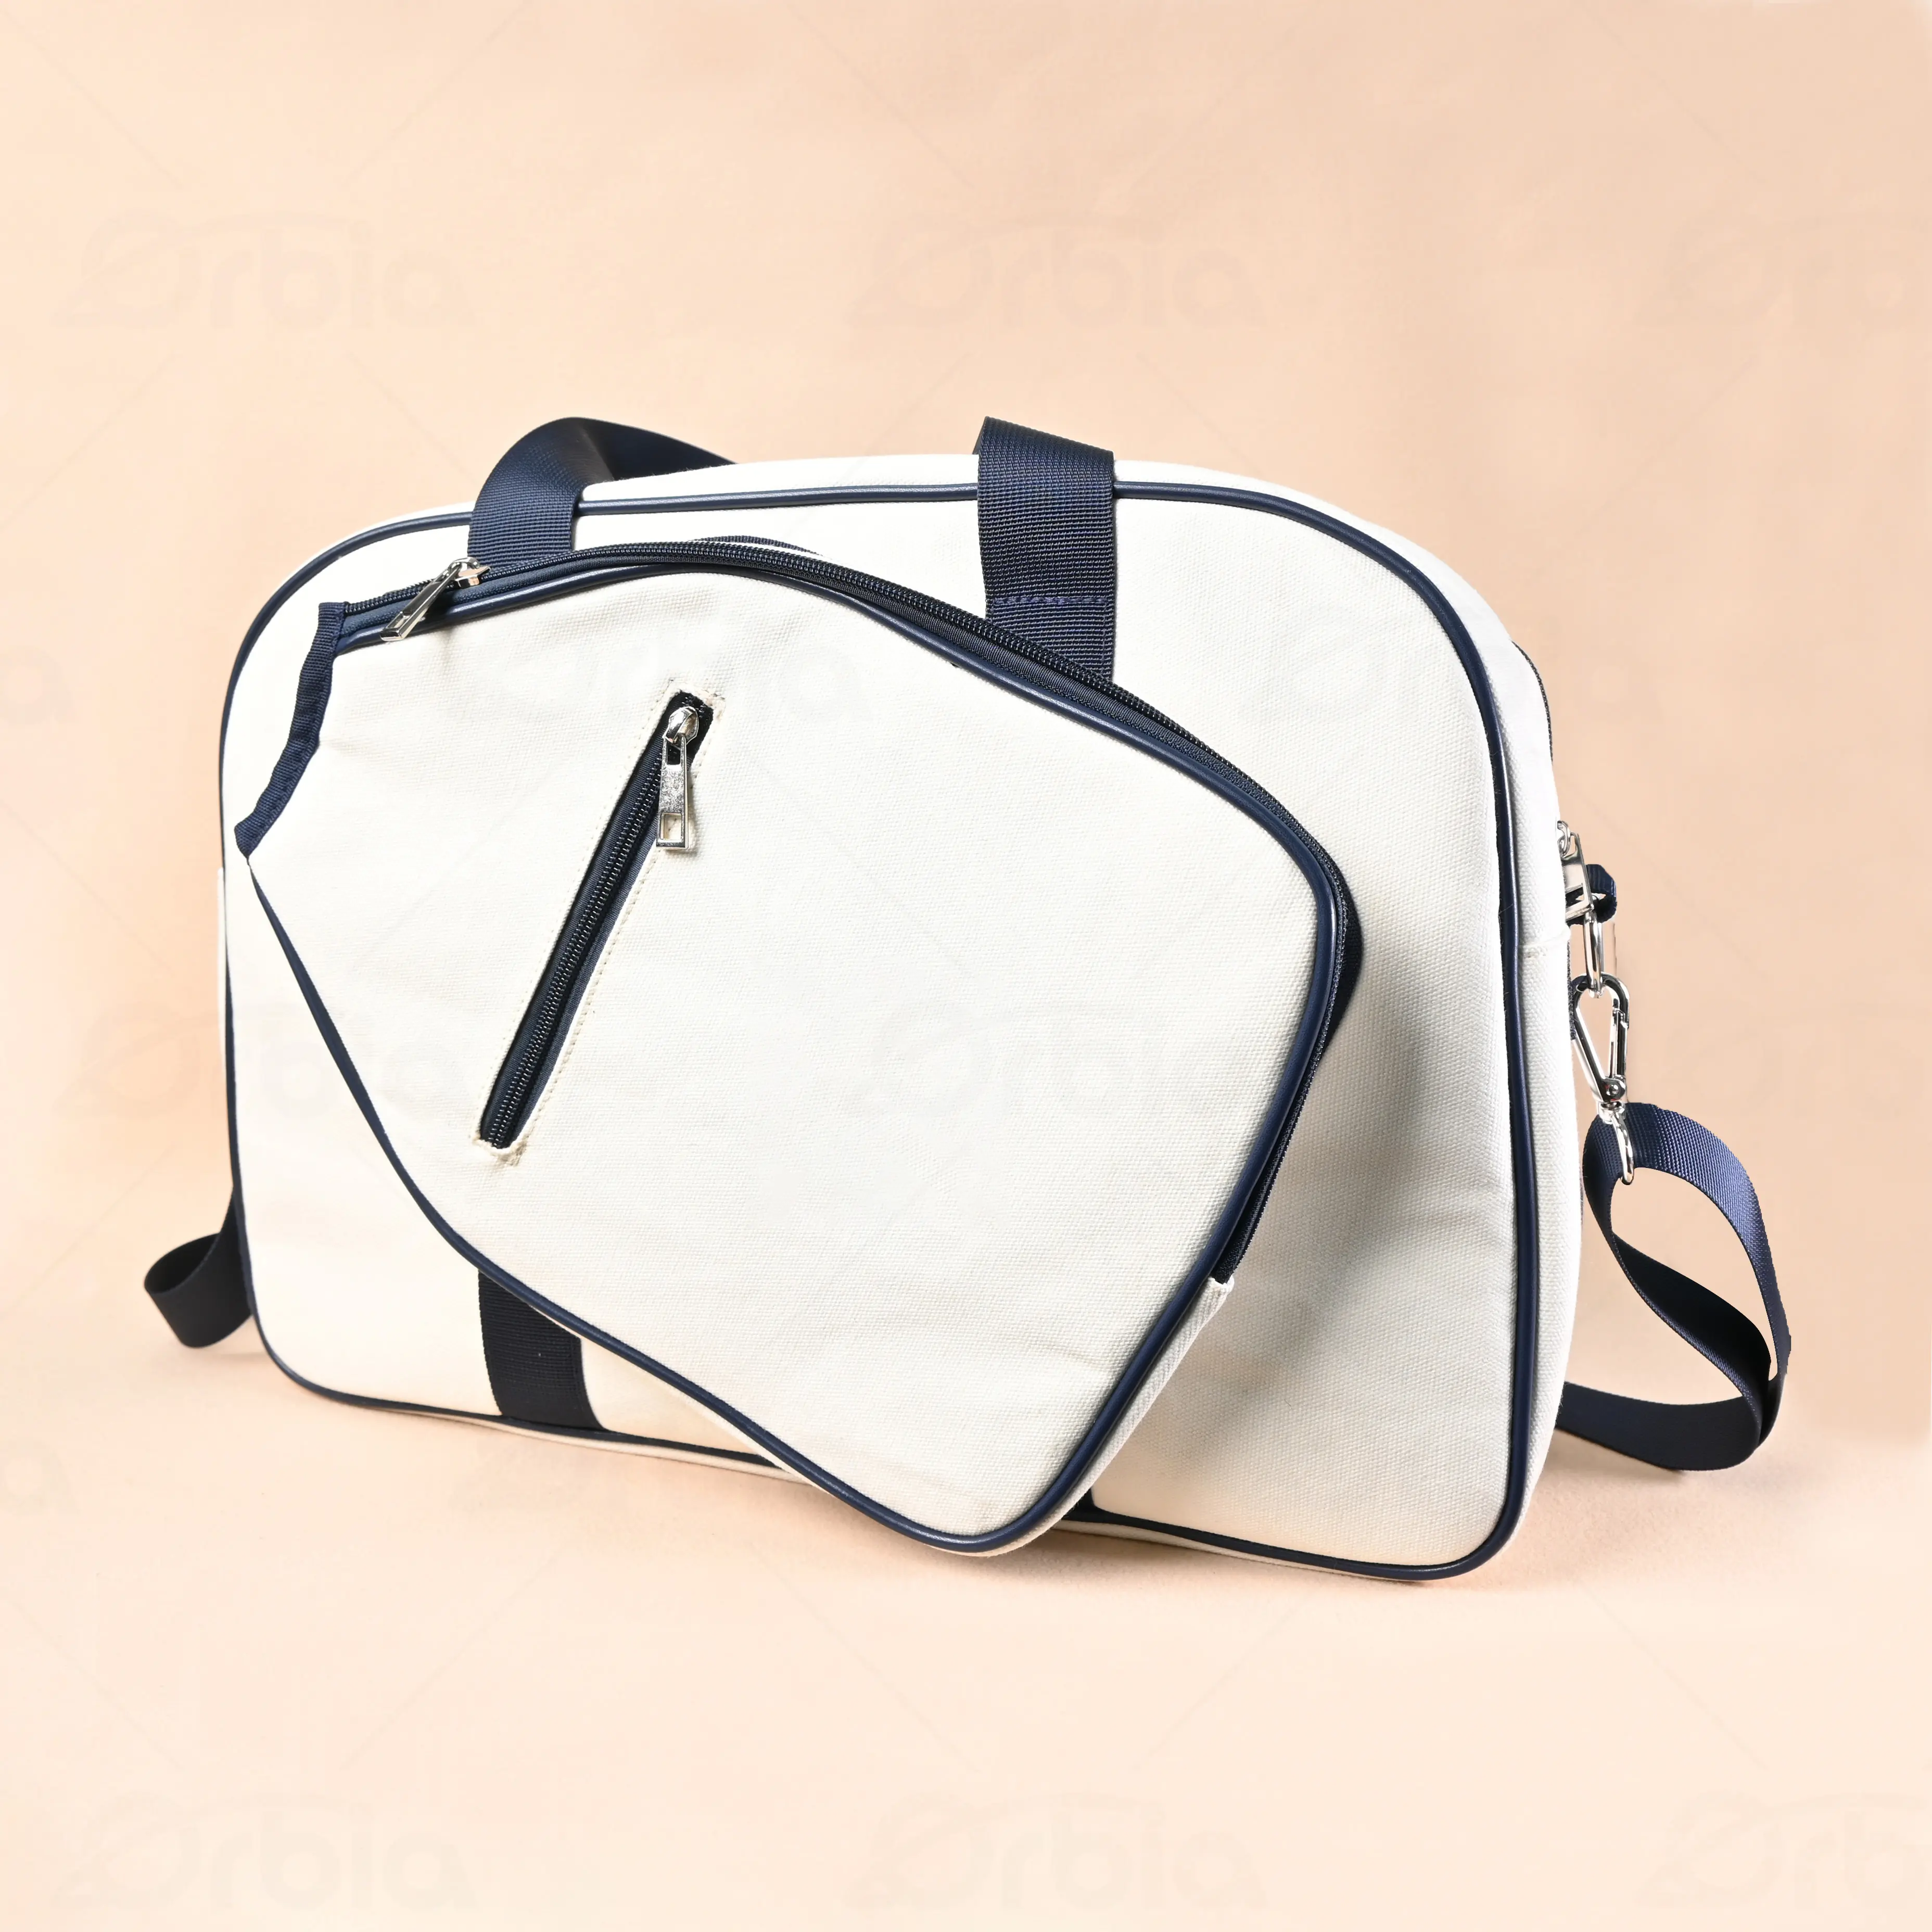 Orbia spor açık Pickleball kürek çantası spor özel kürek spor çanta aksesuarları için klasik yazdırılabilir bez alışveriş çantası